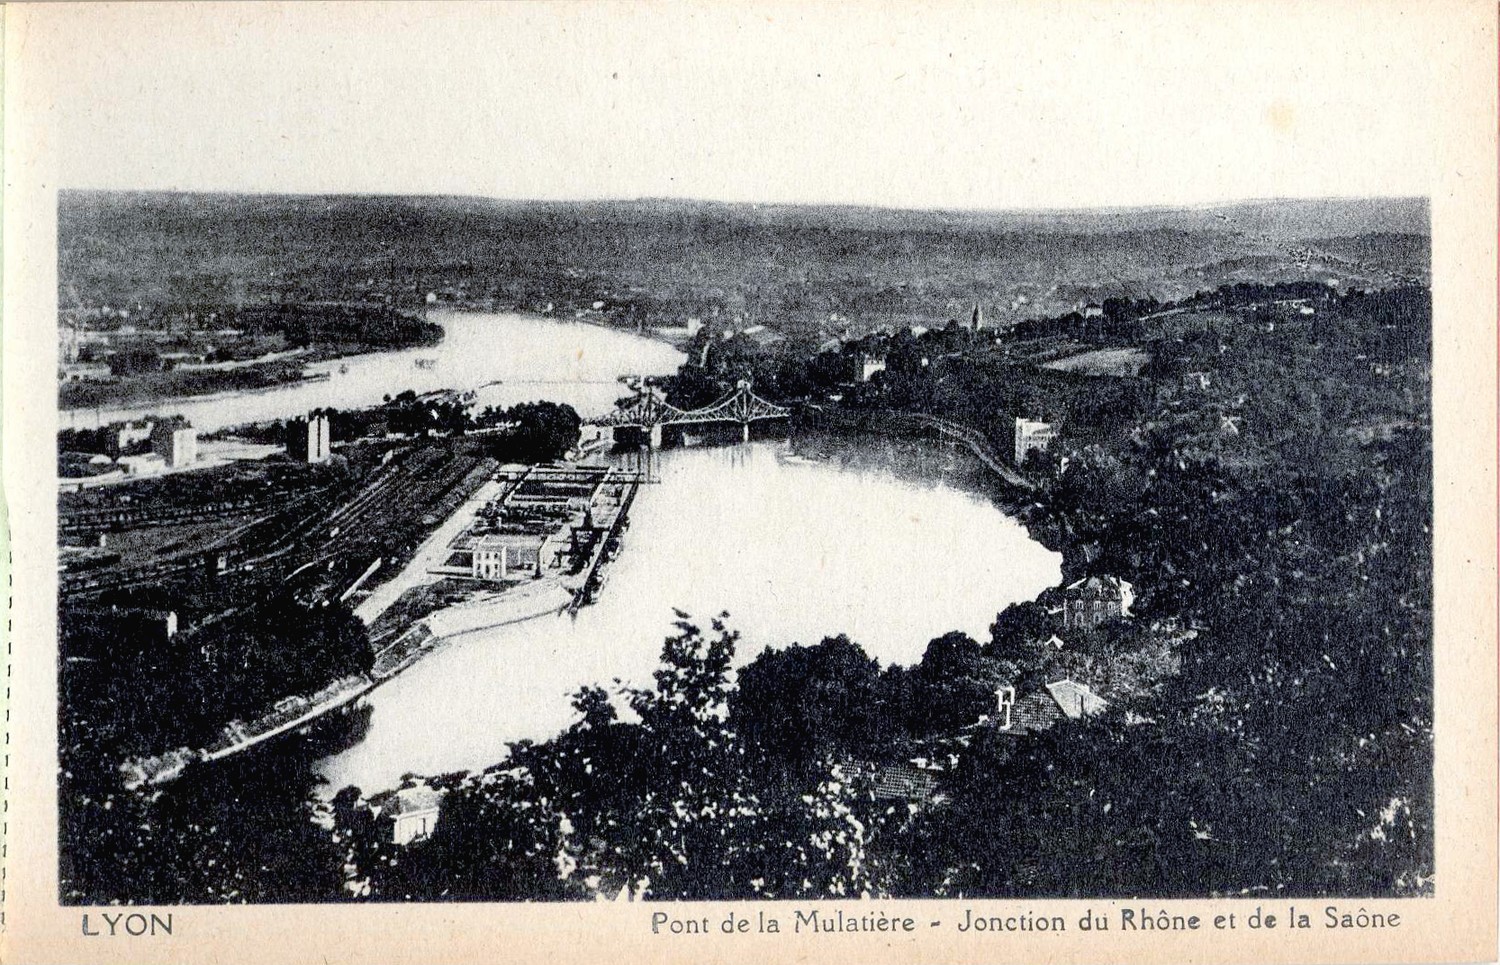 Lyon : Pont de la Mulatière ; Jonction du Rhône et de la Saône